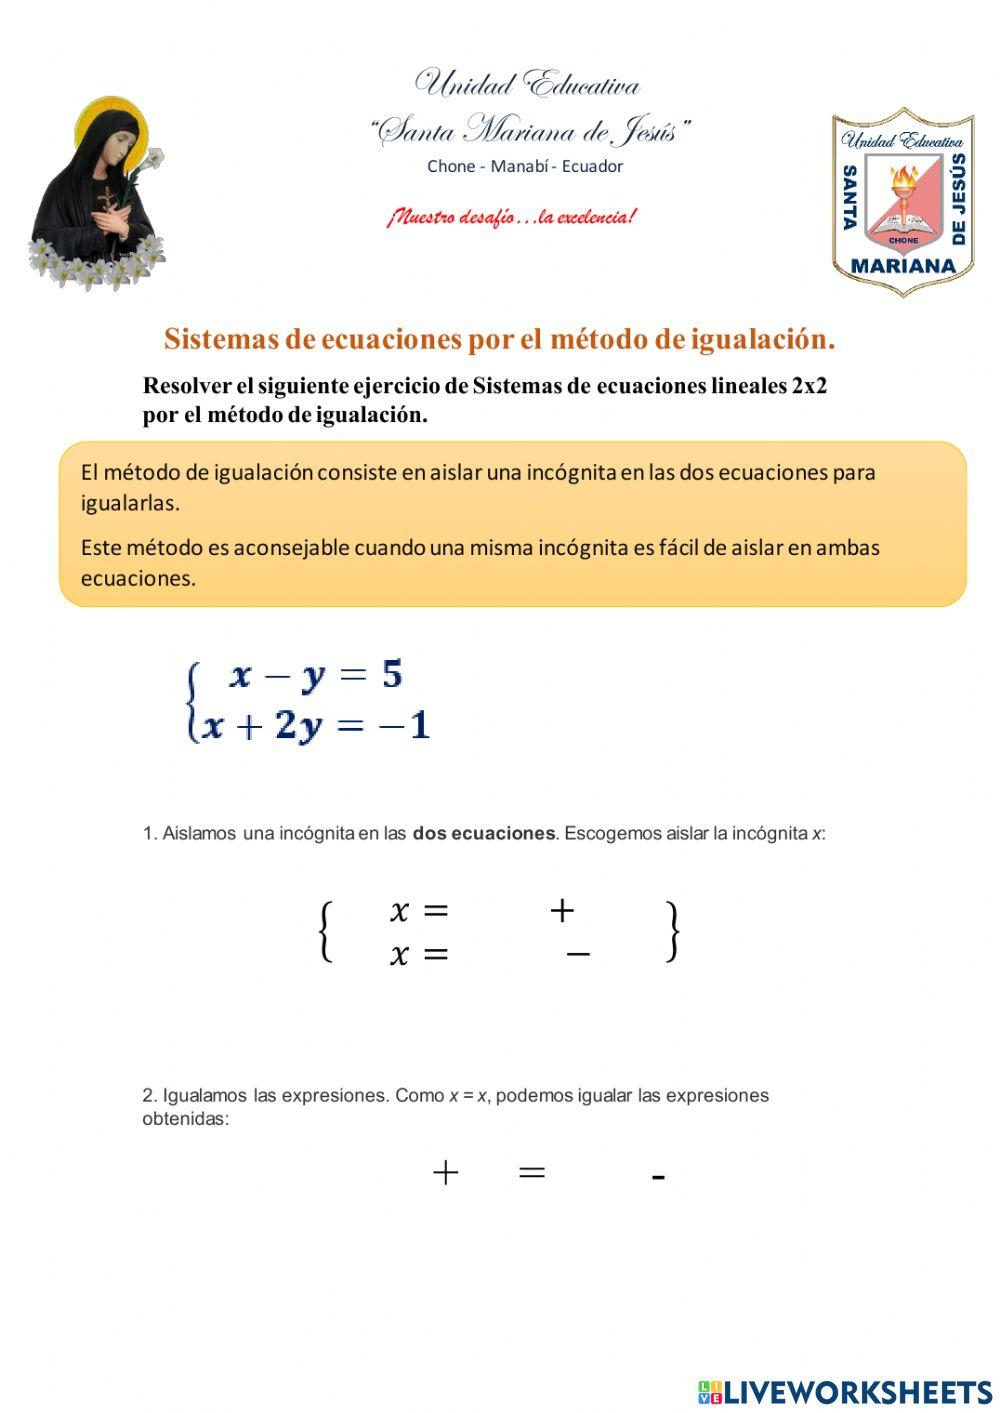 Sistemas de ecuaciones lineales 2x2 por el método de igualación.